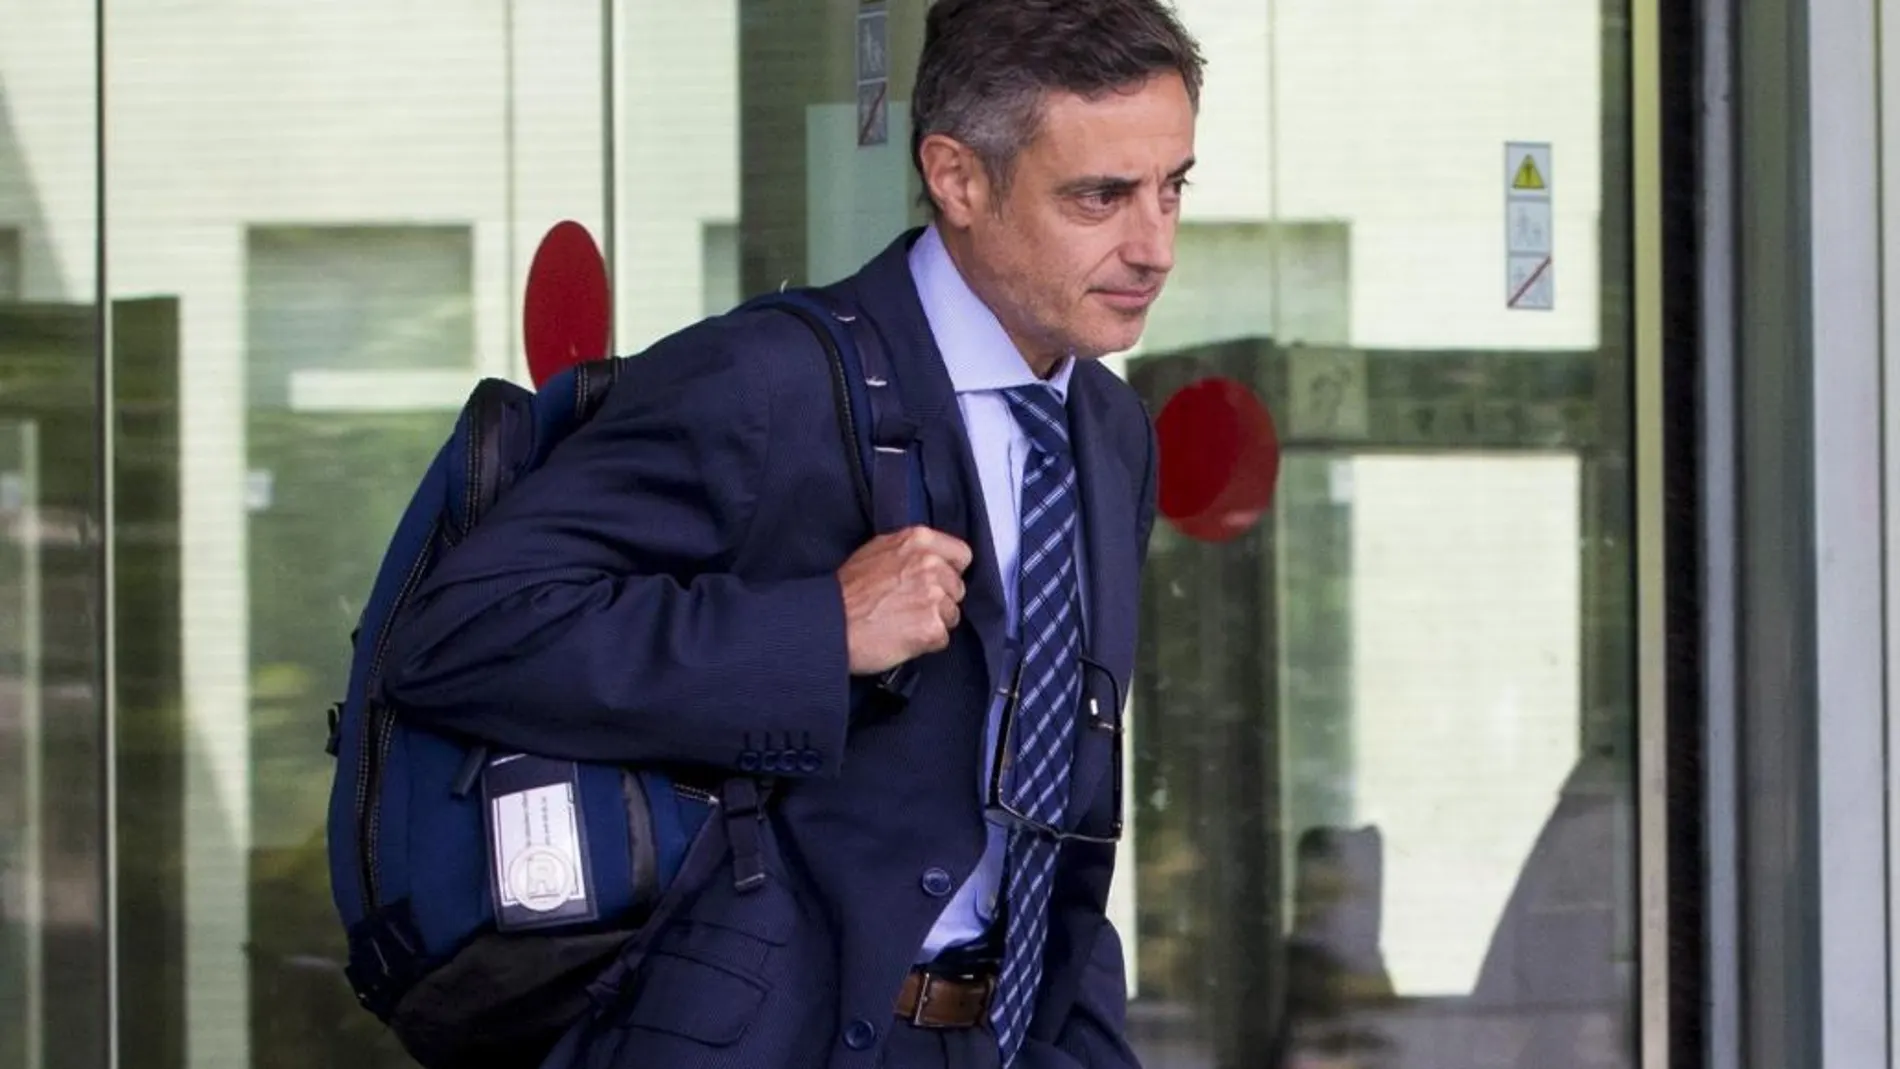 El fiscal Anticorrupción, Emilio Sánchez Ulled, abandona la Ciudad de la Justicia después de exponer sus informes finales del juicio por el expolio del Palau de la Música